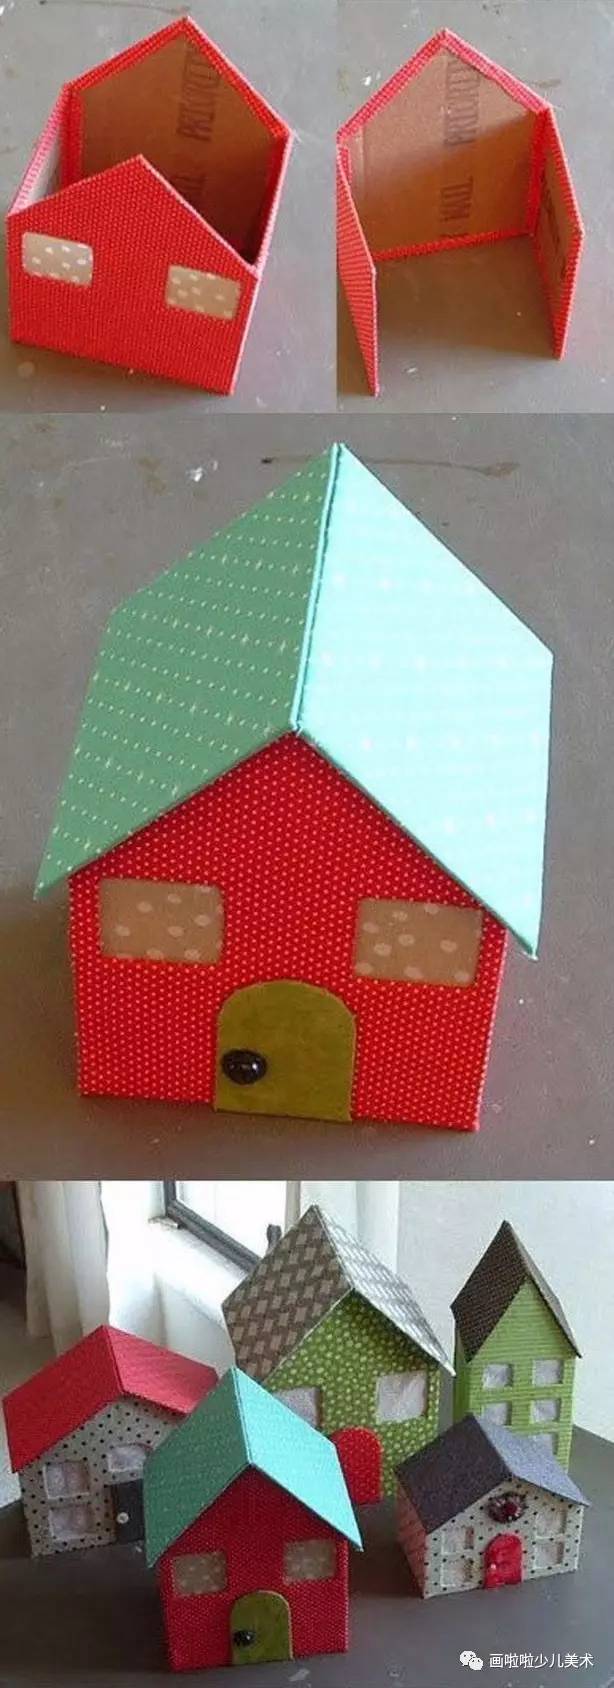 如果有小纸盒,可以买一些卡纸回来,在卡纸上画出房子的门口,窗户,屋顶